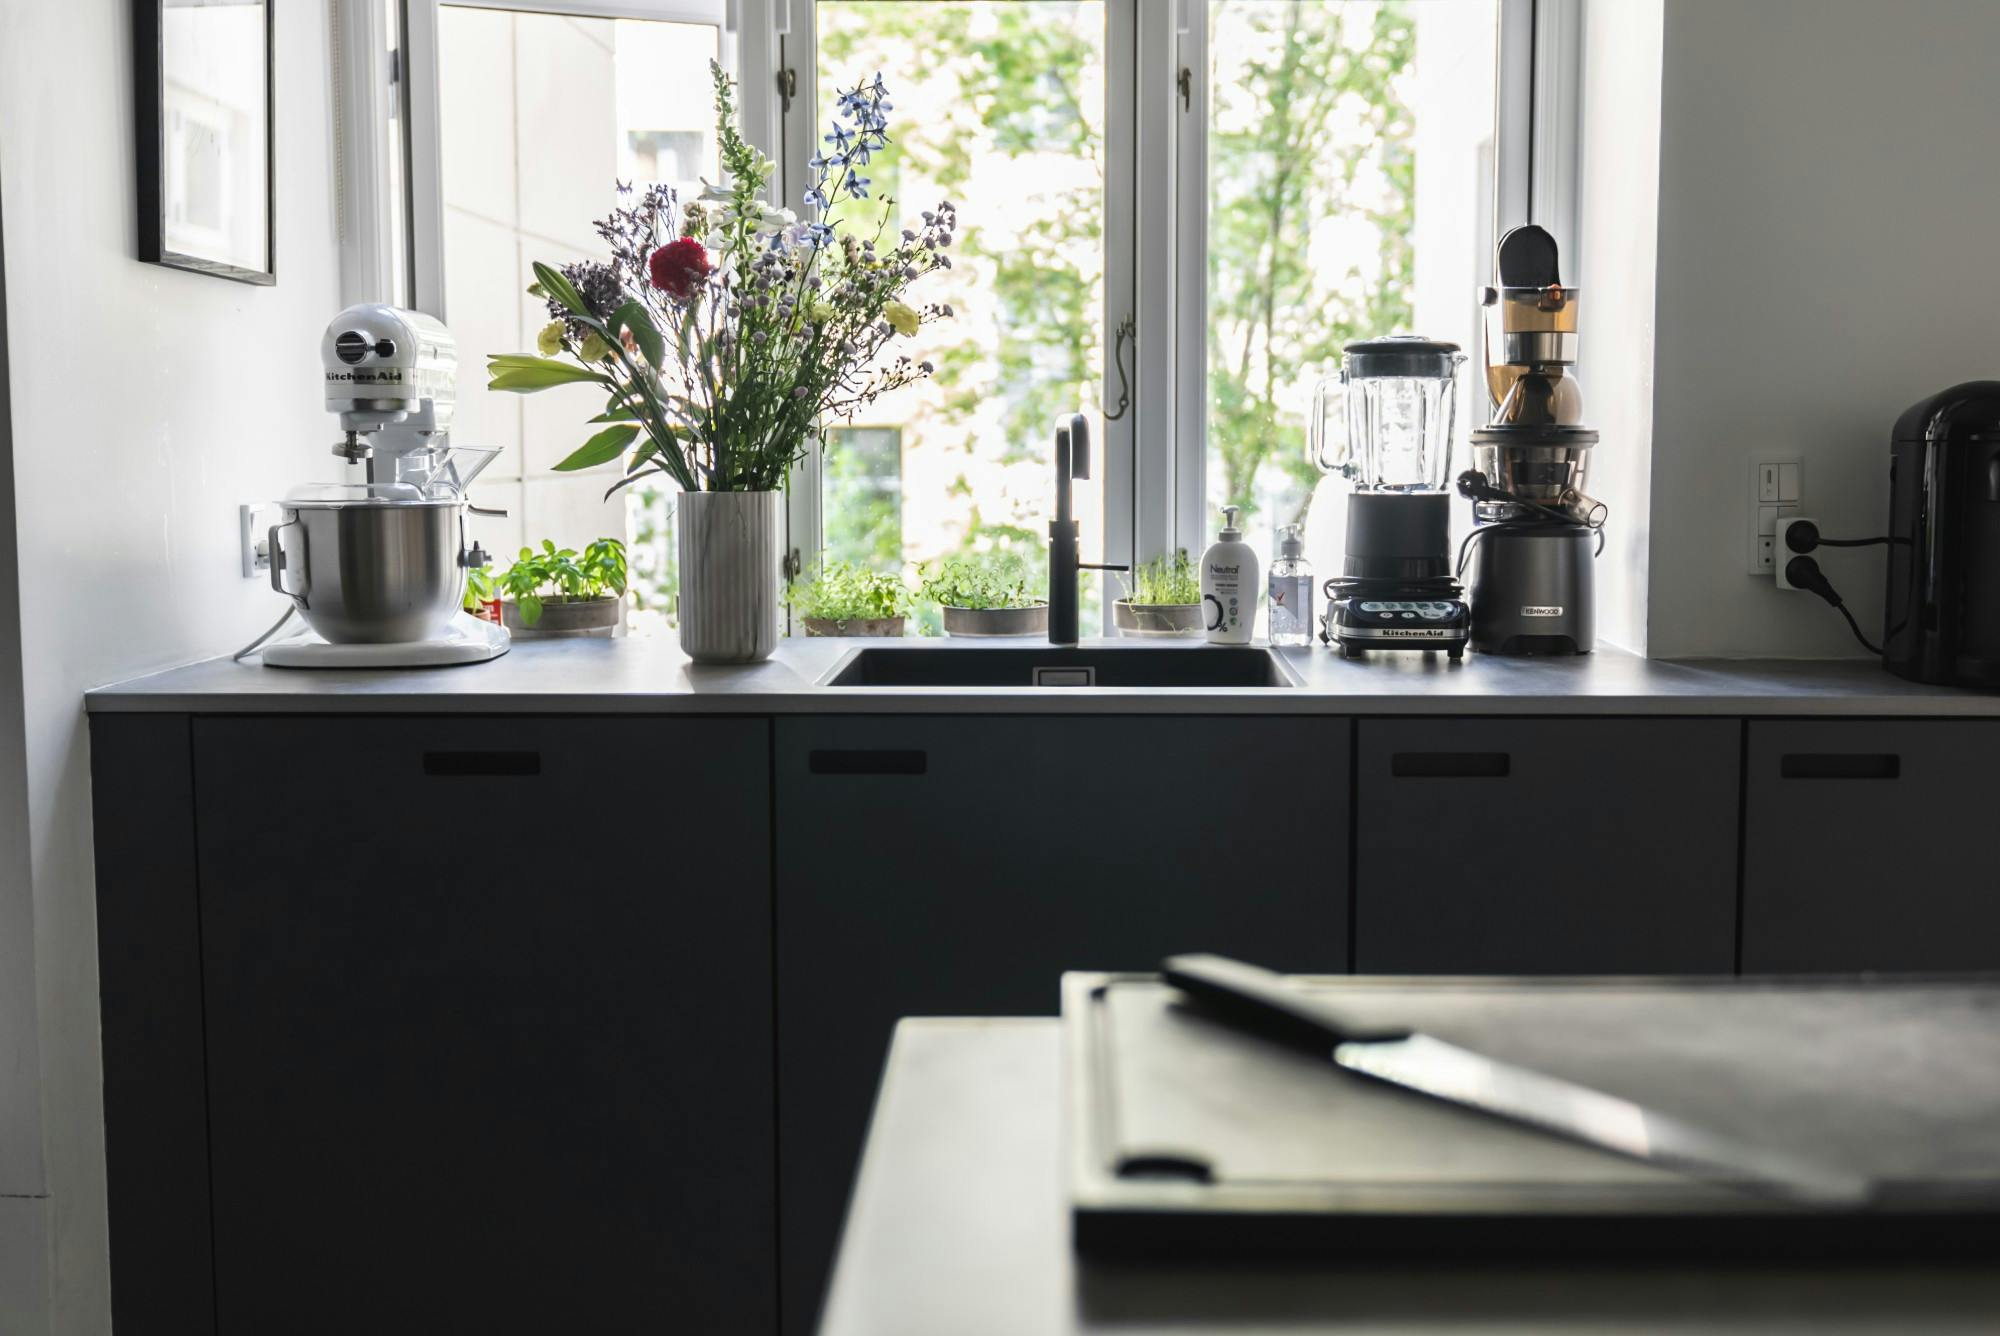 Bildnummer 39 des aktuellen Abschnitts von Professional features for a domestic kitchen worktop von Cosentino Deutschland